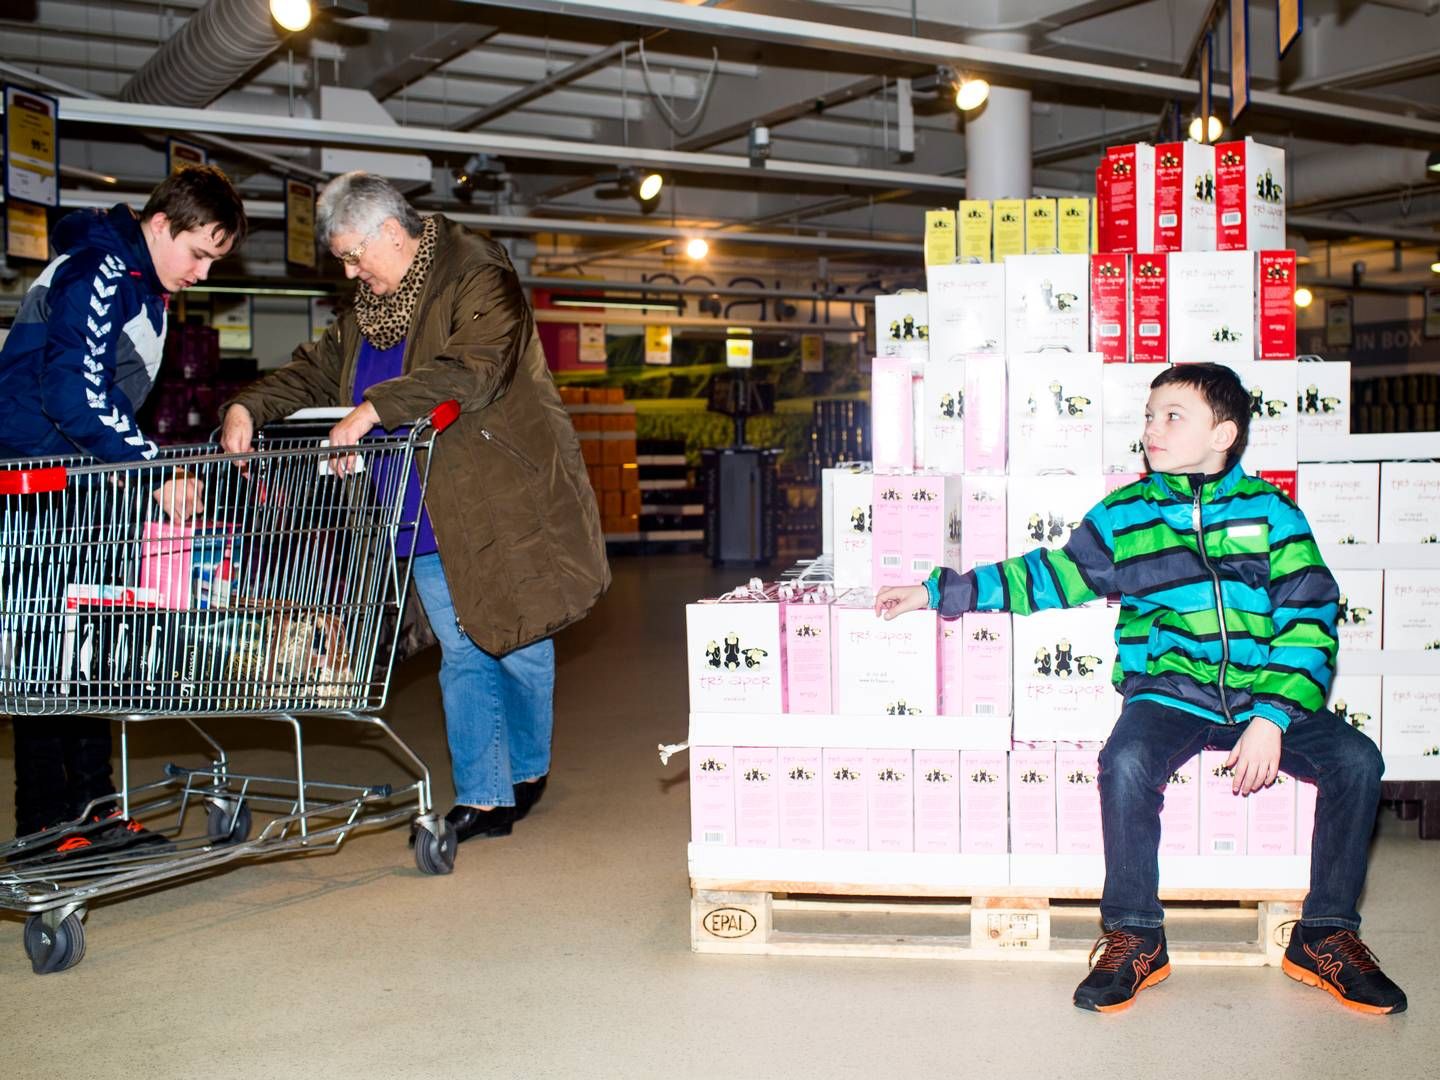 Mange nordmænd strømmer til Sverige for at købe billigere varer. (Arkivfoto). | Foto: Janus Engel